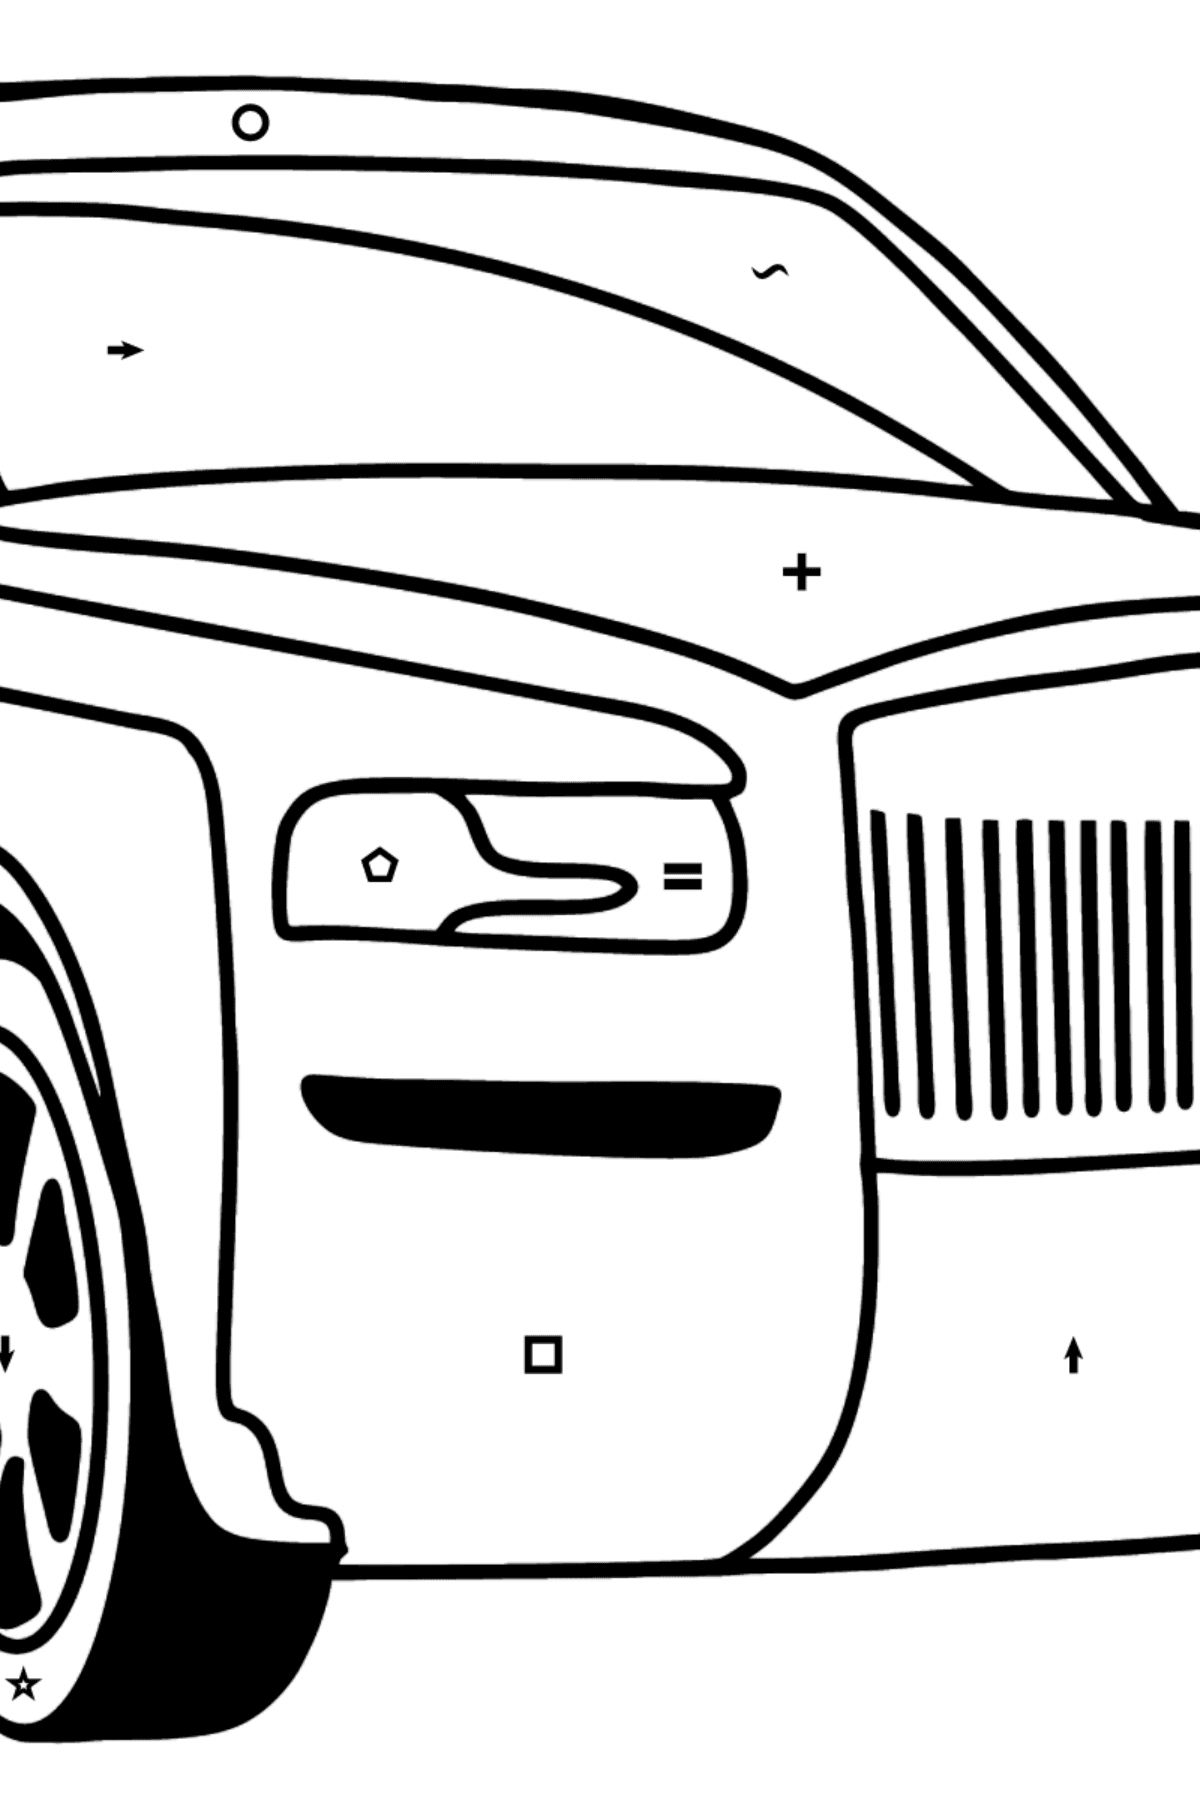 Kolorowanka Samochód Rolls Royce - Kolorowanie według symboli i figur geometrycznych dla dzieci